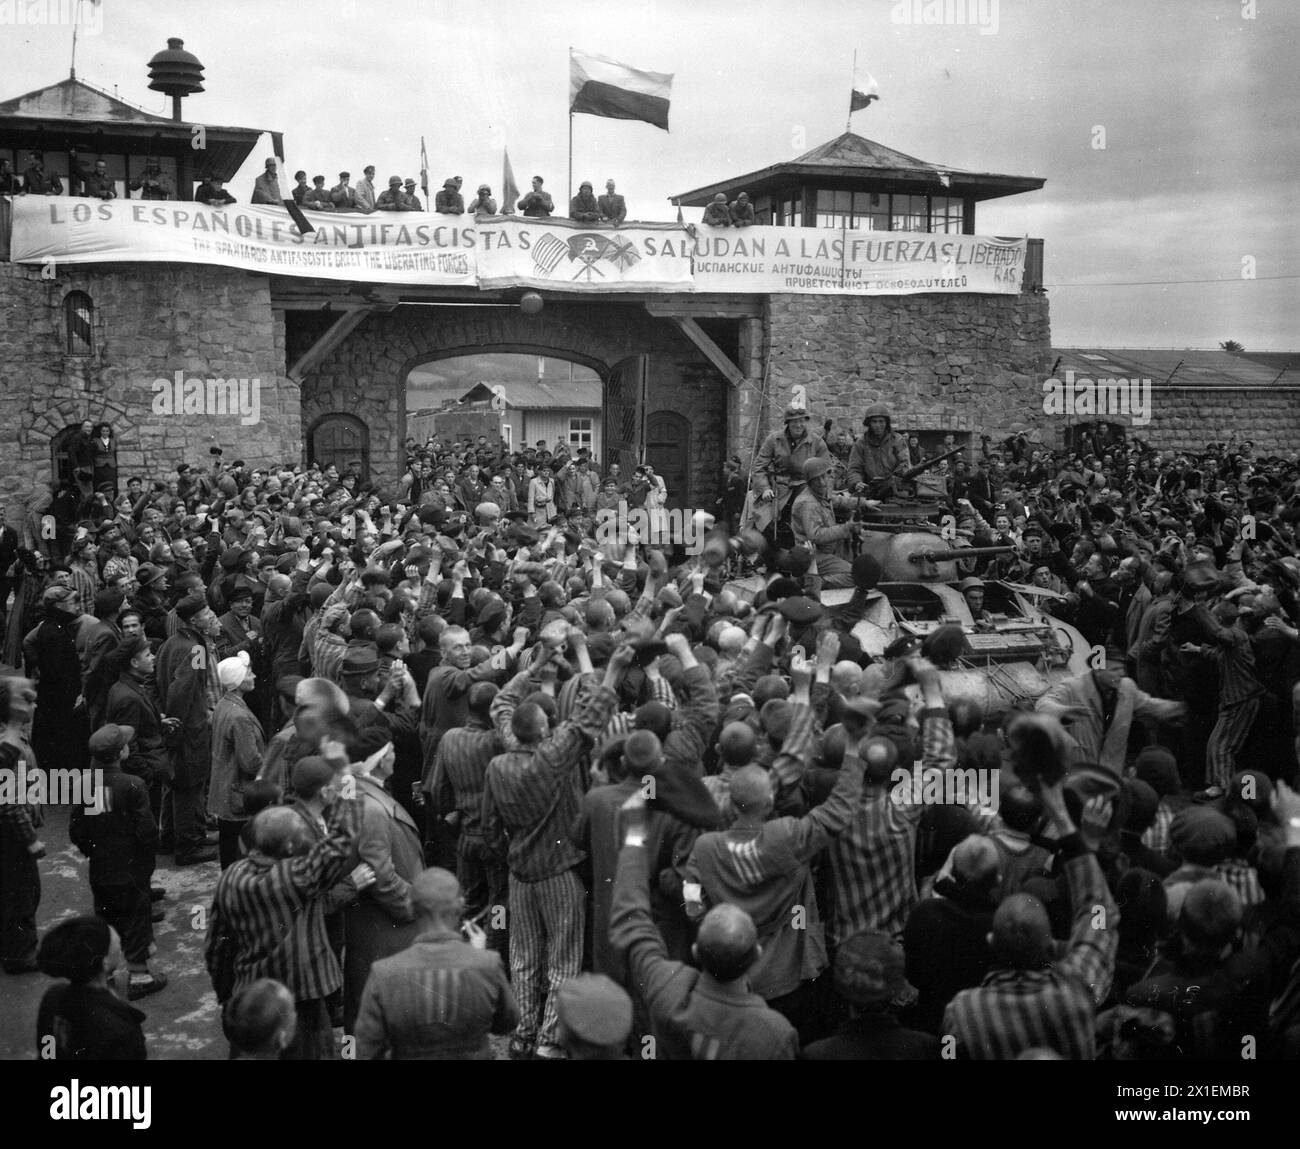 Les prisonniers libérés dans le camp de concentration de Mauthausen près de Linz, en Autriche, accueillent avec enthousiasme les cavaliers de la 11e division blindée. La bannière à travers le mur a été faite par des prisonniers loyalistes espagnols CA. 6 mai 1945 Banque D'Images